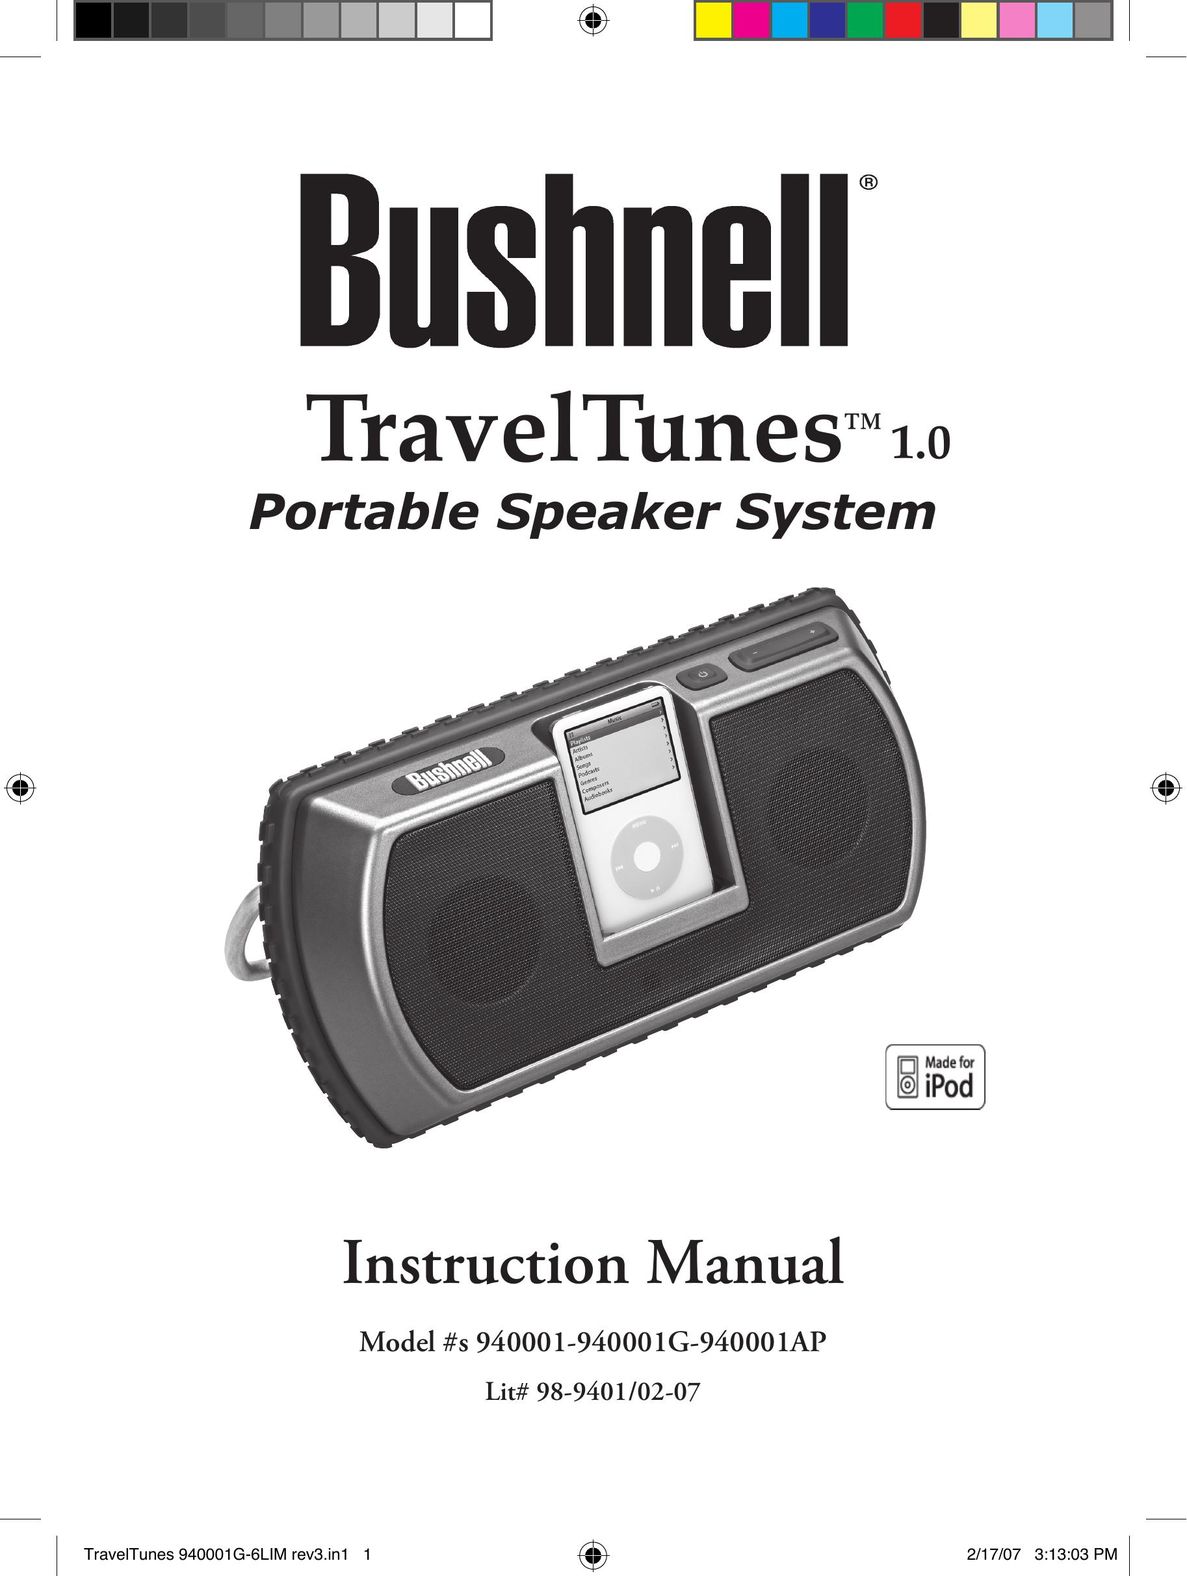 Bushnell 940001AP Portable Speaker User Manual